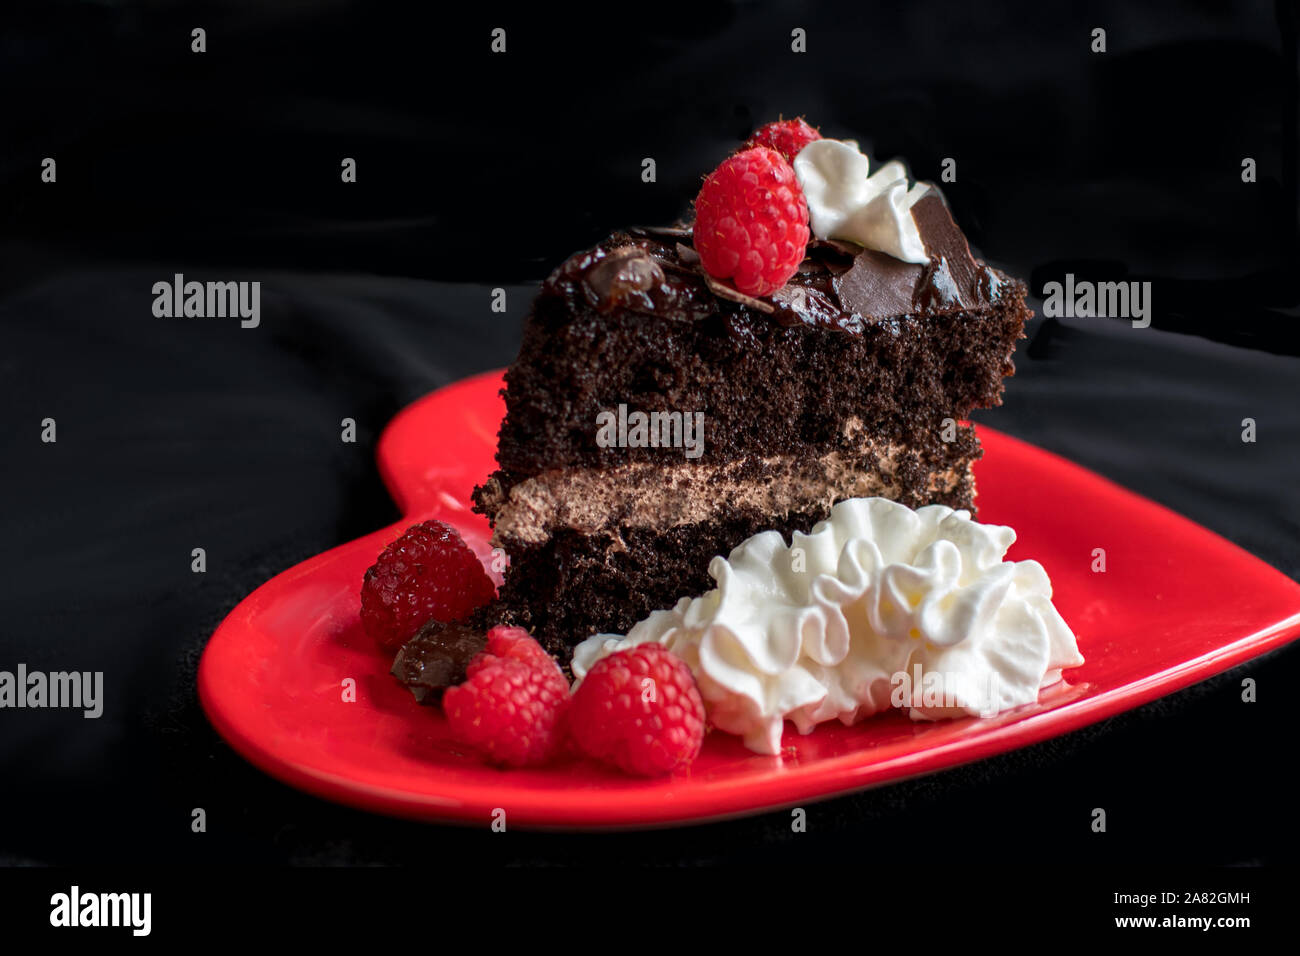 Ein schönes Stück Schokoladenkuchen, beruht auf einer roten Herzen Platte und ist mit Schlagsahne garniert, Himbeeren und rasiert Schokolade Stockfoto